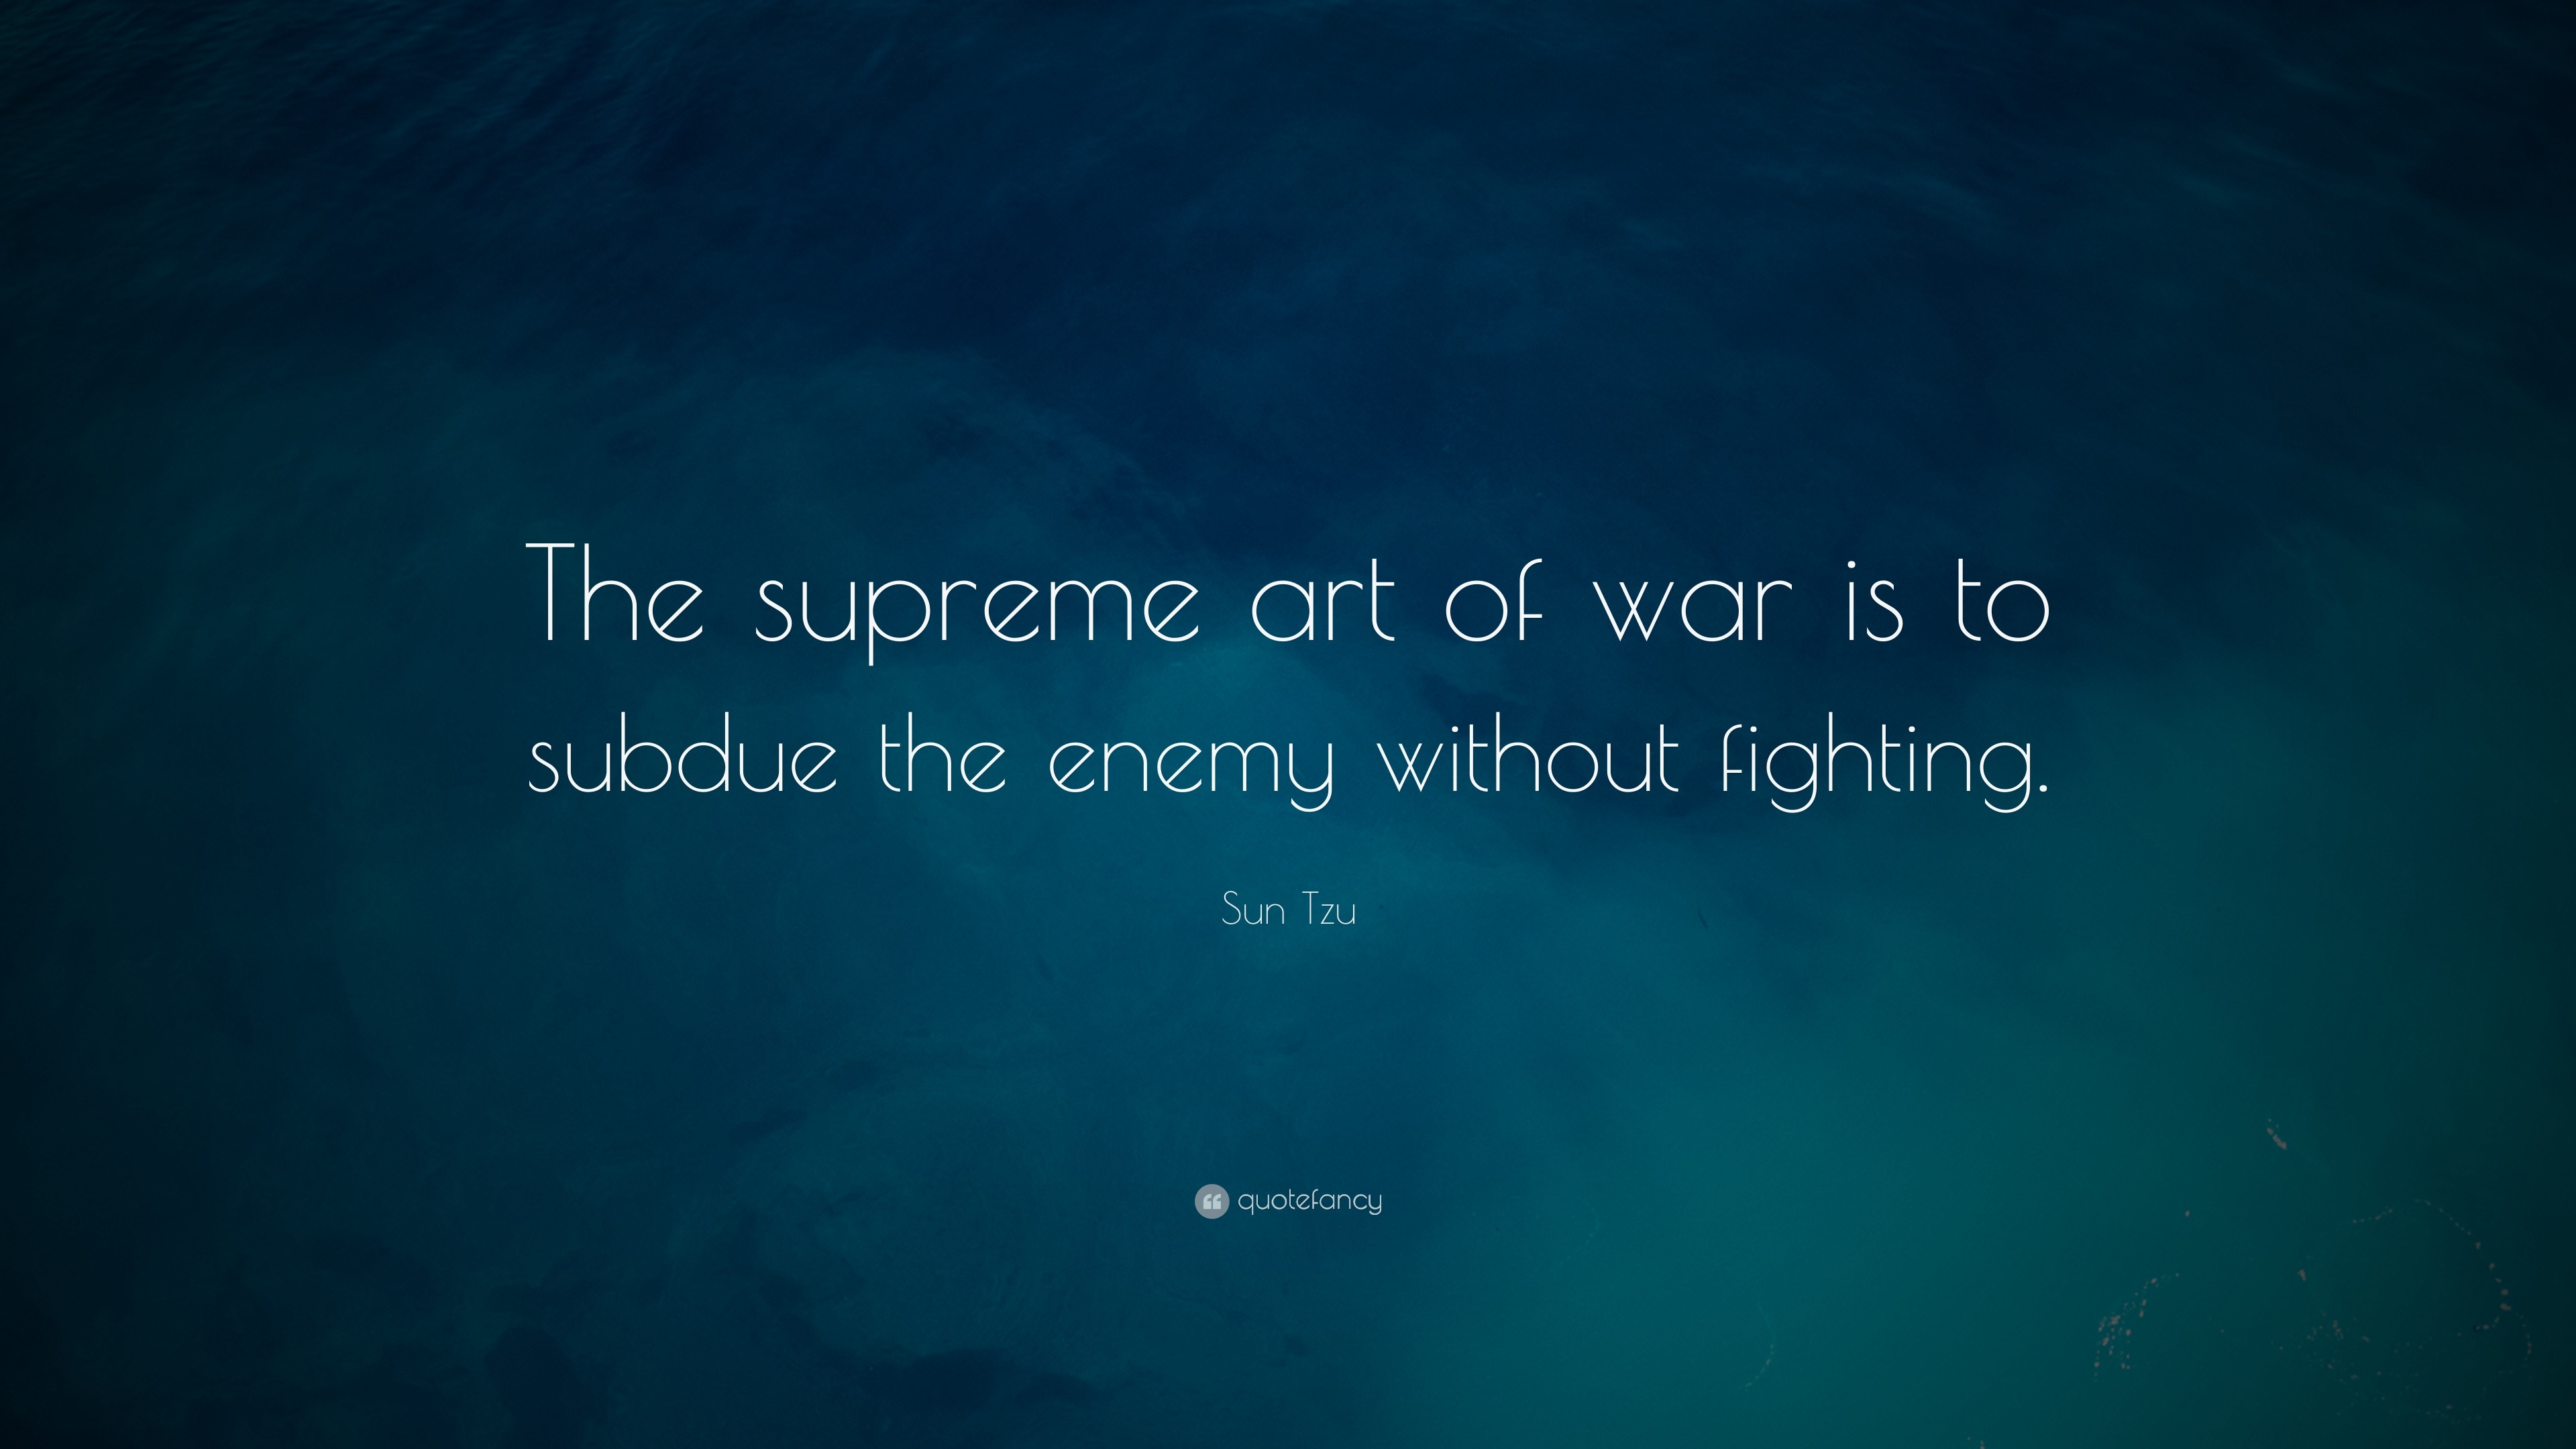 Sun Tzu Quotes (9 wallpapers) - Quotefancy